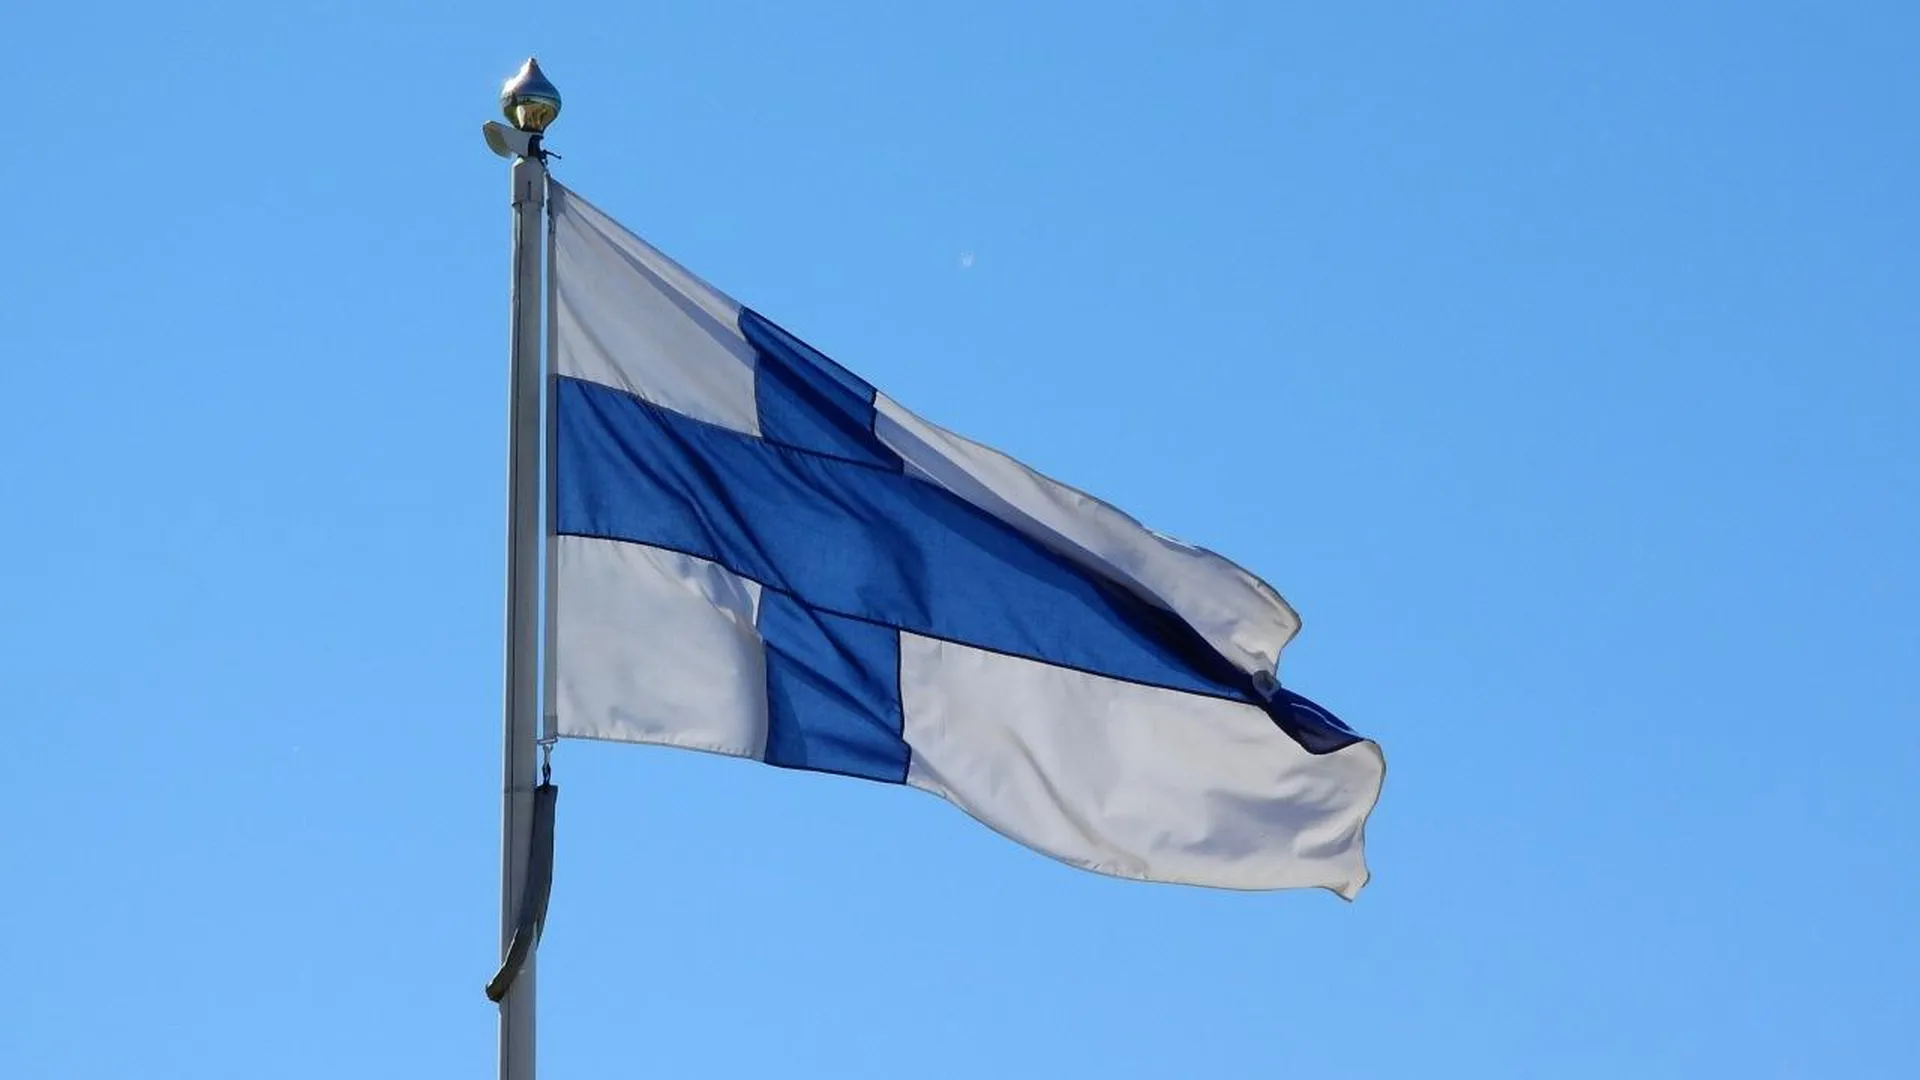 Финский политик Аалтола предложил перекрыть России доступ к Калининграду